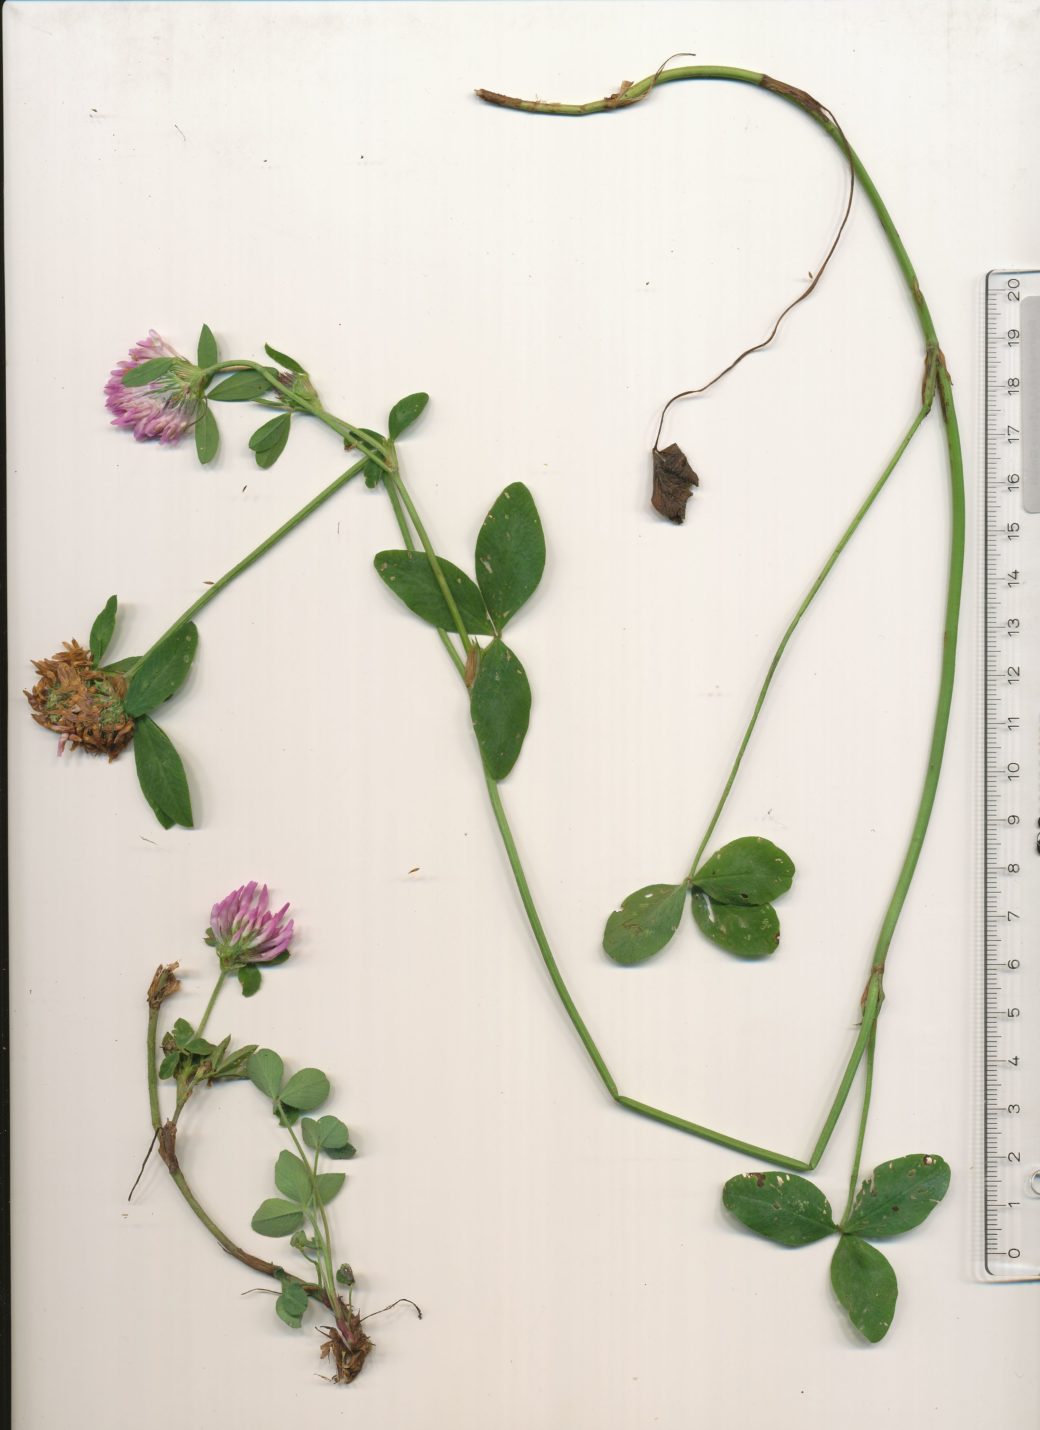 Abbildung: Das Foto zeigt auf einer weißen Unterlage einen ausgebreiteten  Pflanzenkörper eines Exemplares von Wiesenklee, lateinisch Trifolium pratense. Rechts neben der Pflanze liegt ein Gliedermaßstab.